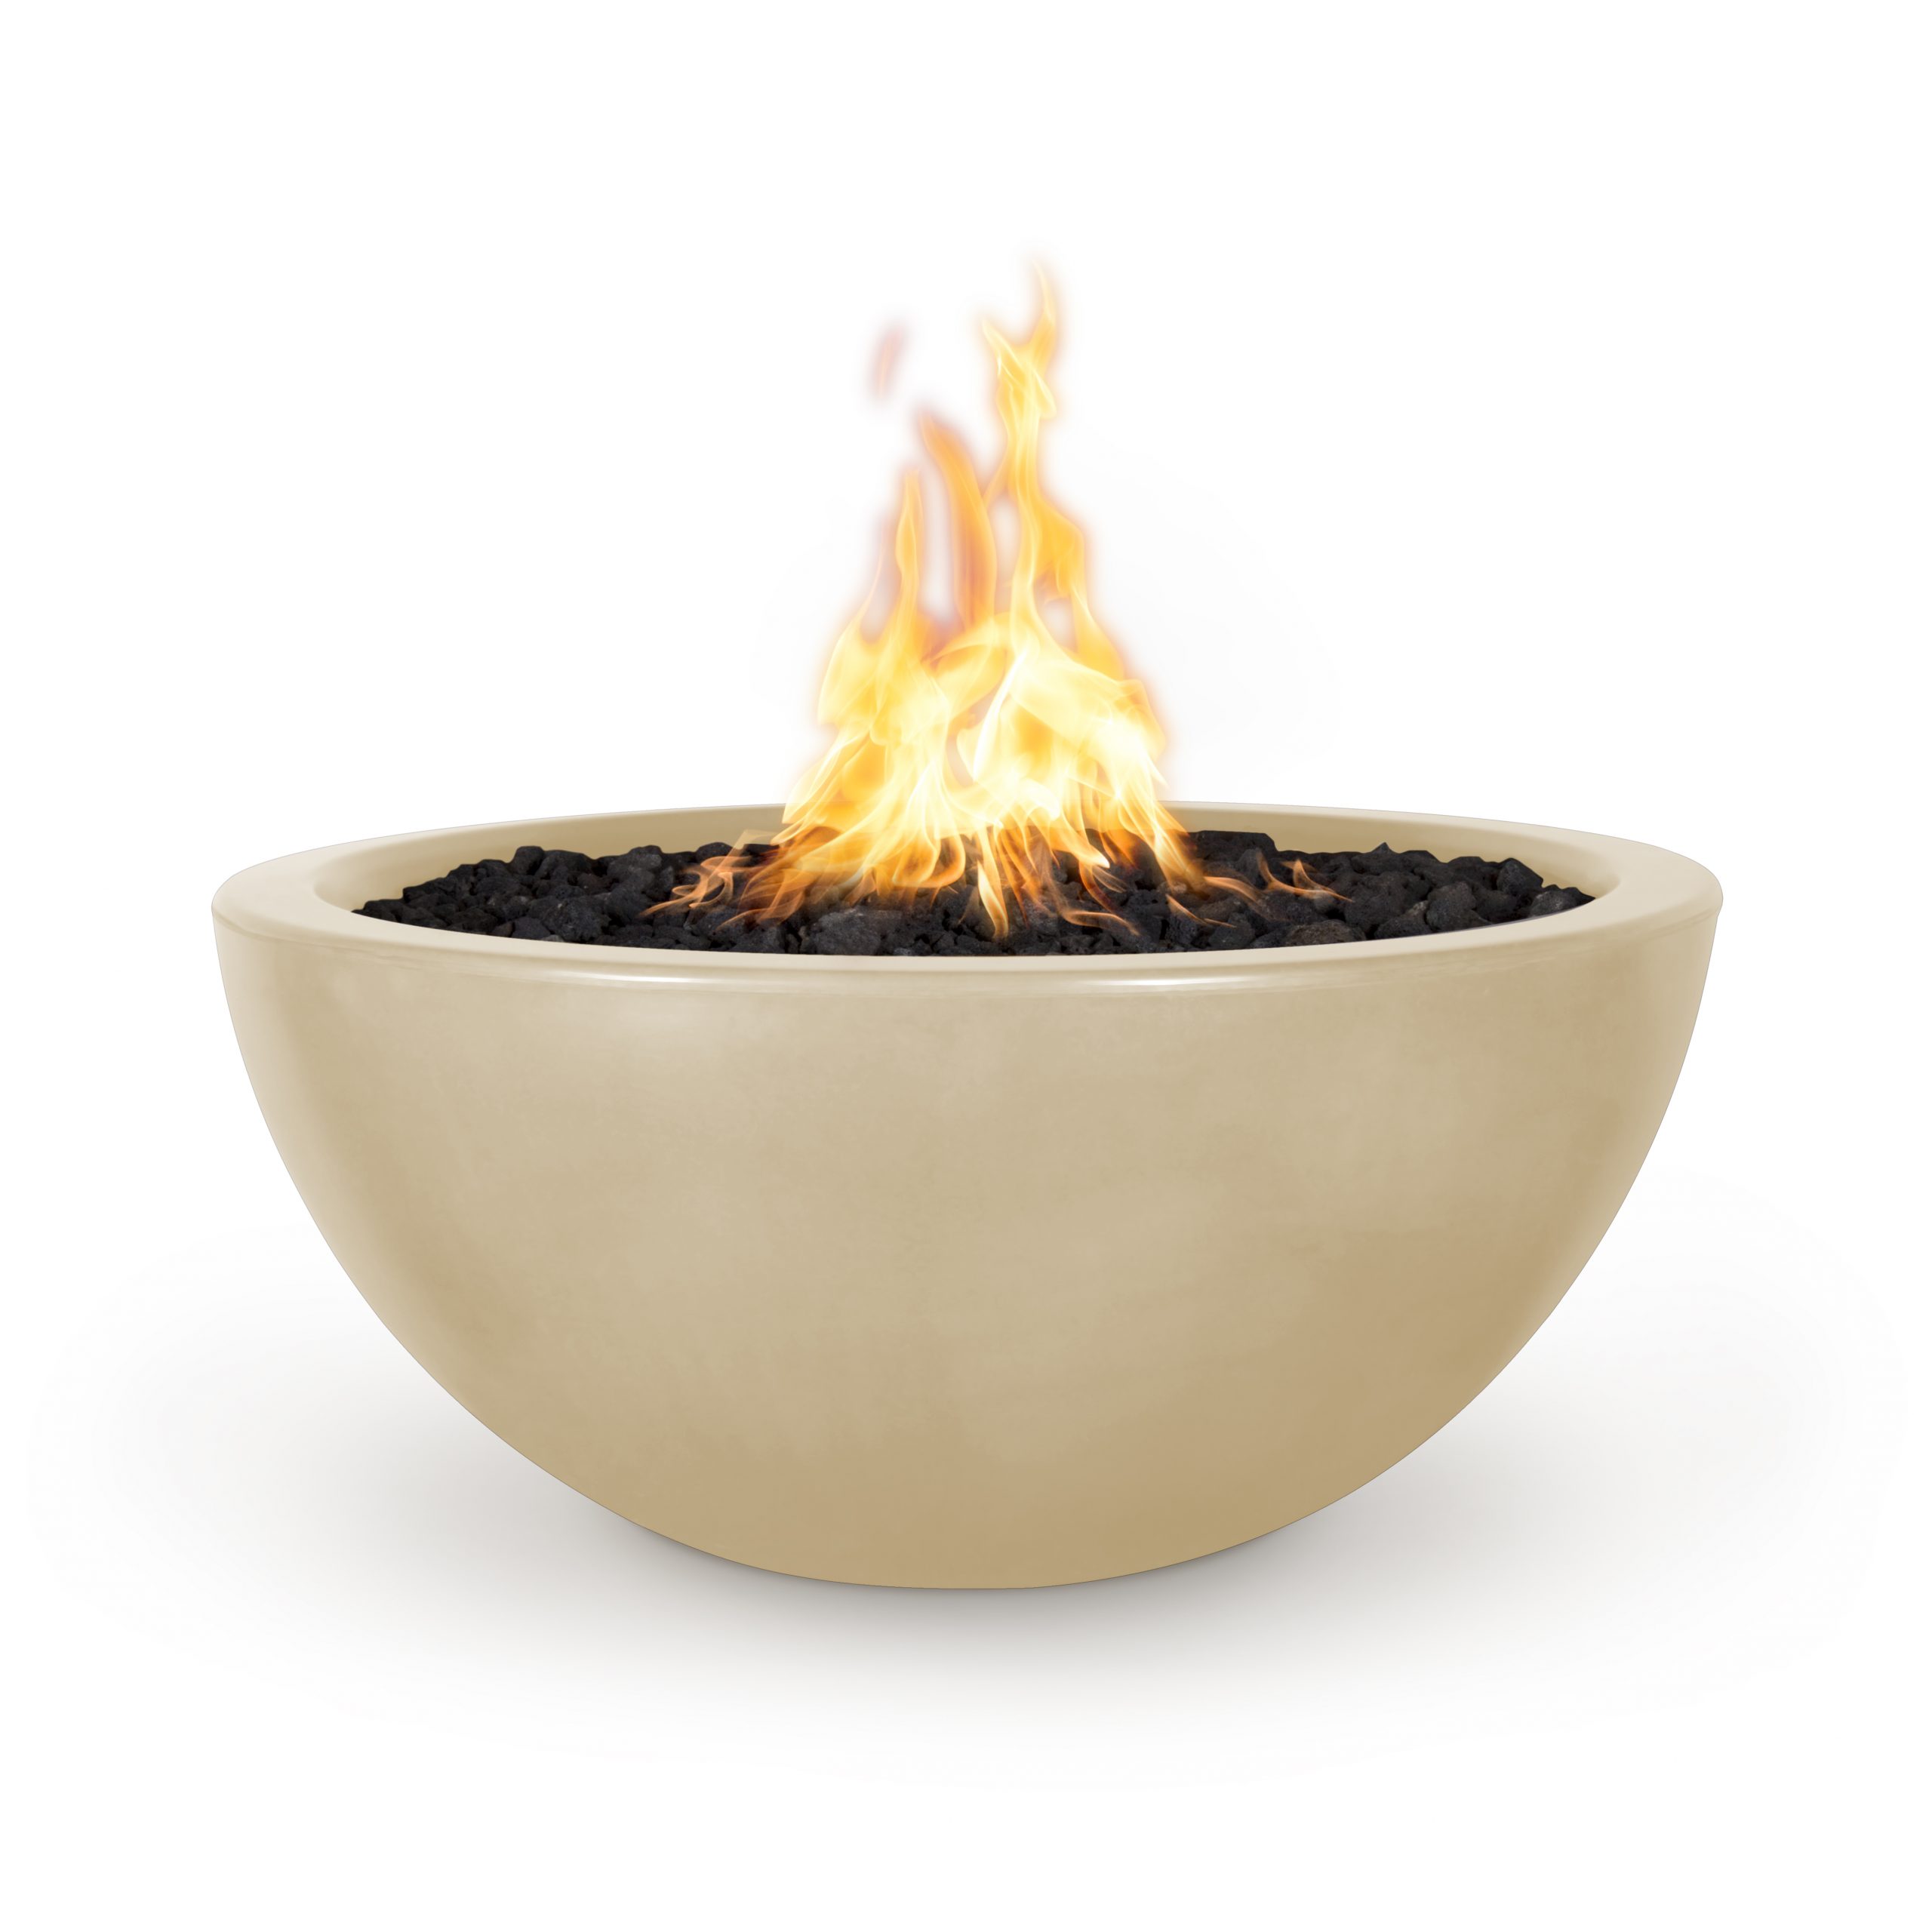 Luna Concrete Fire Bowl The Outdoor Plus, Fire Pit Ceramic Bowl